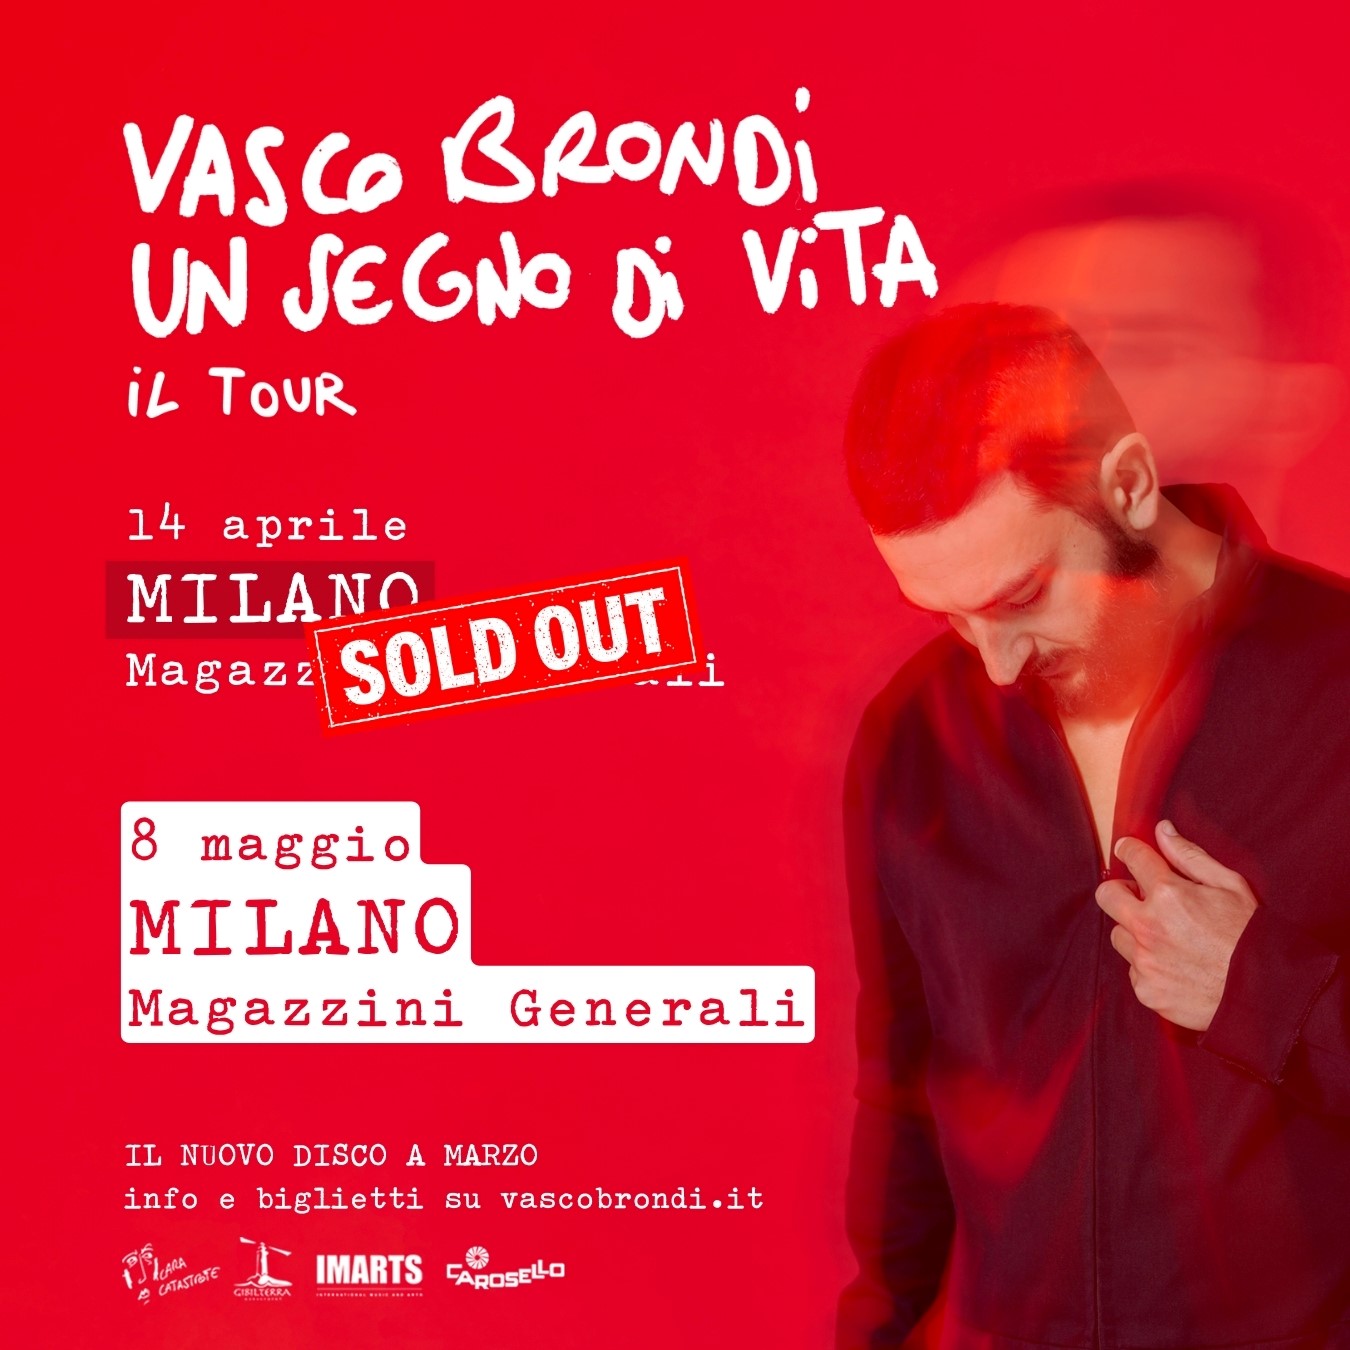 8 maggio - Vasco Brondi